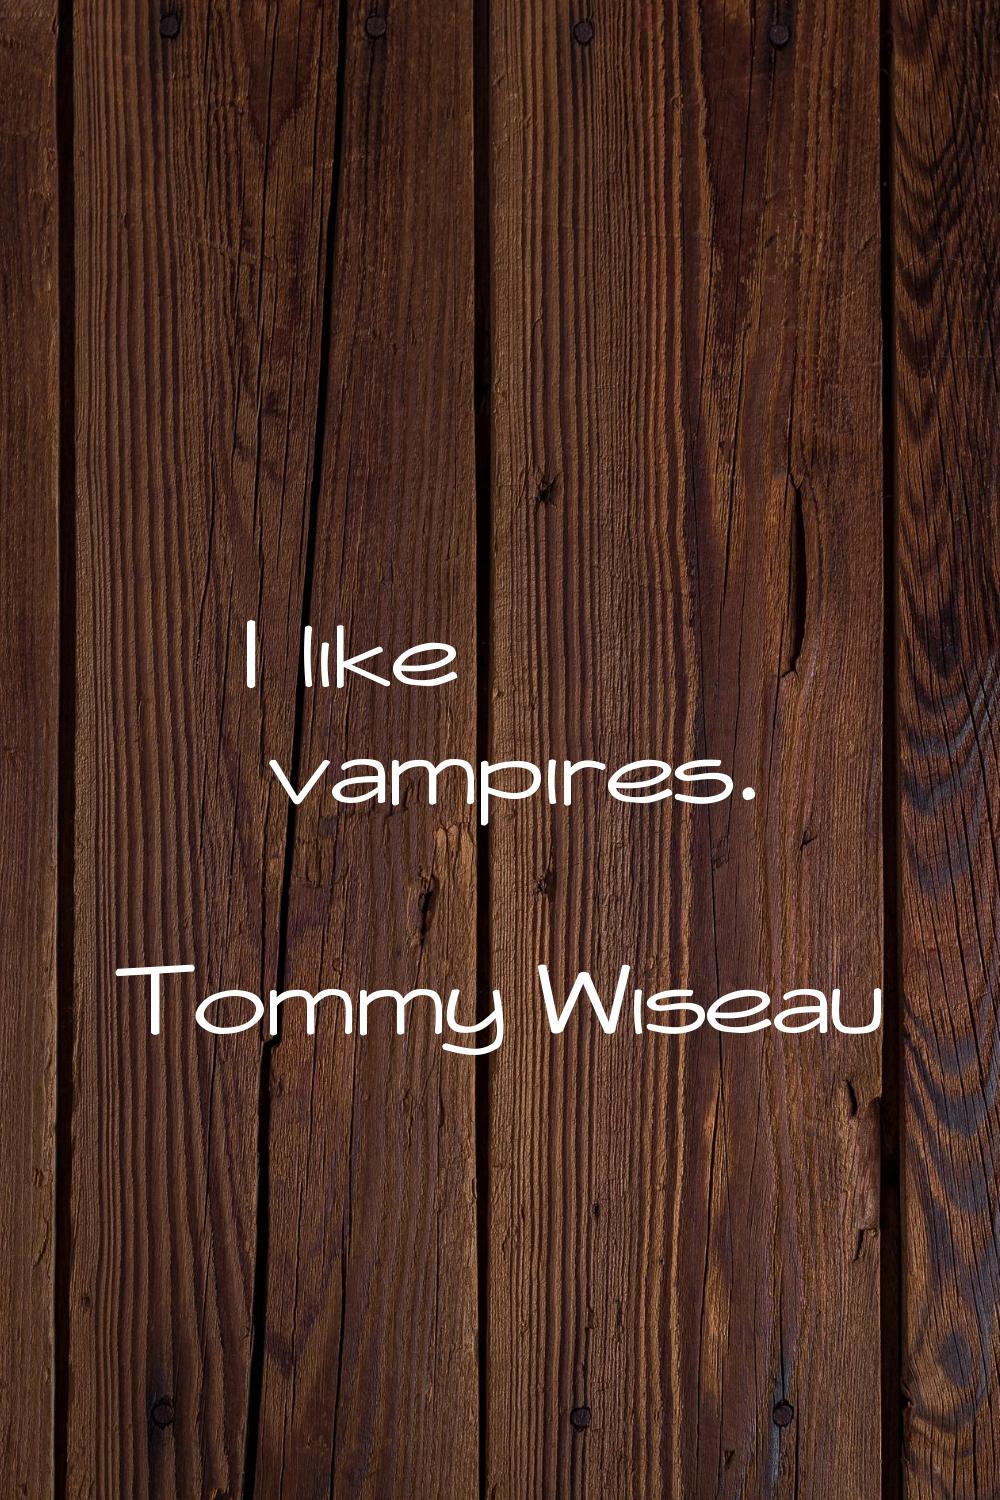 I like vampires.